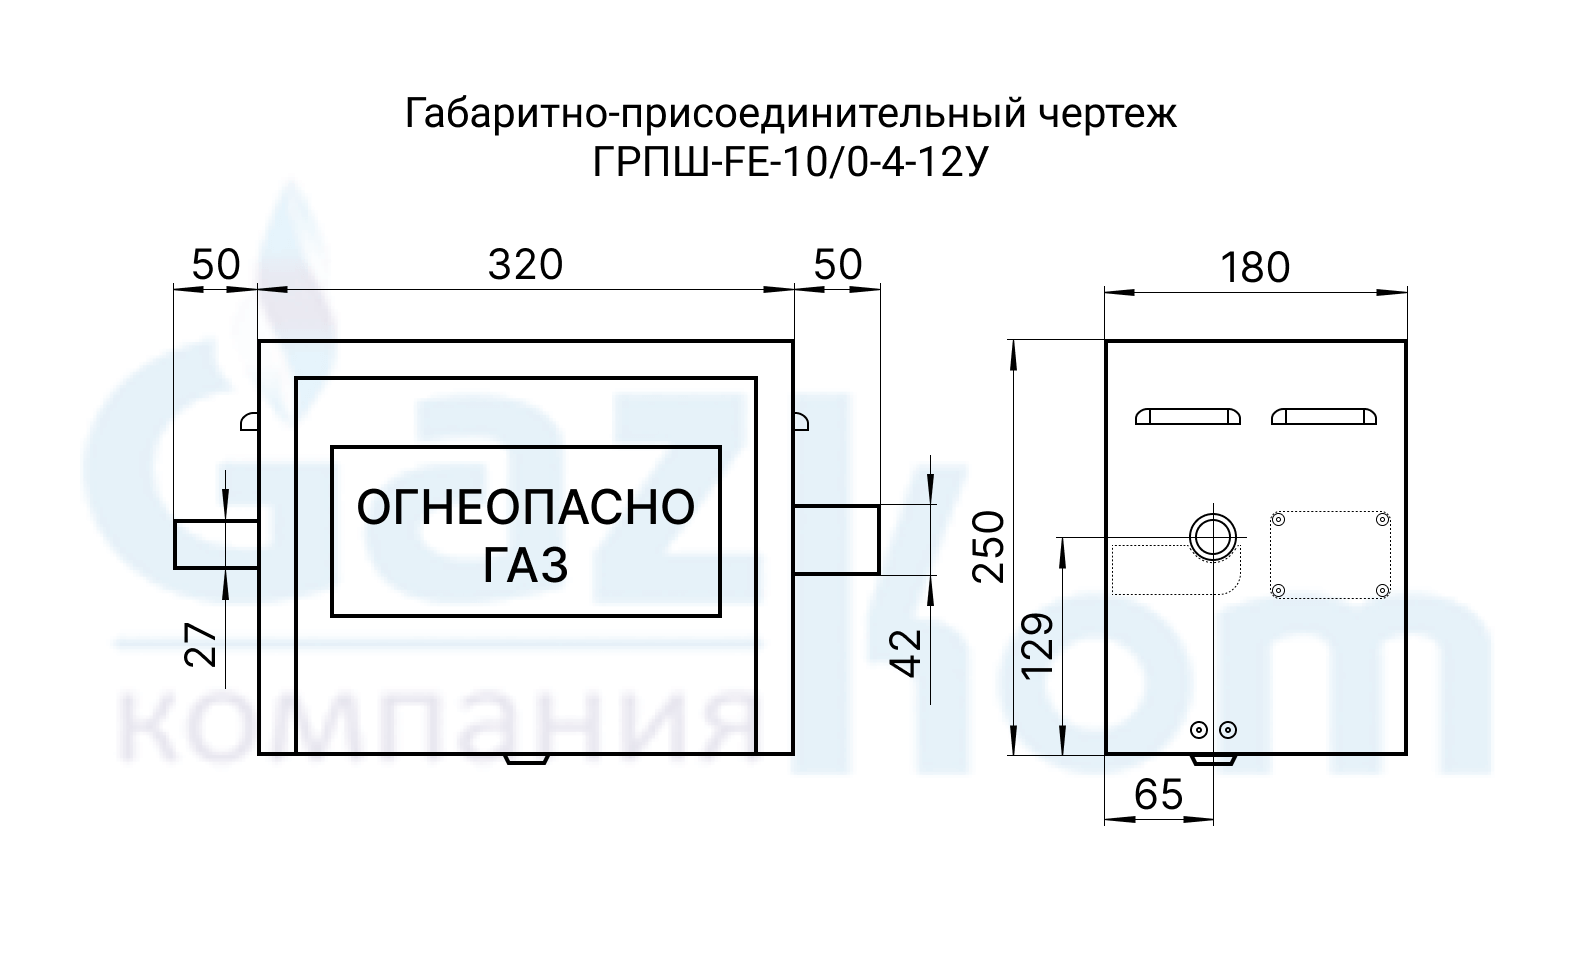 Схема ГРПШ-FE-10/0-4-12У